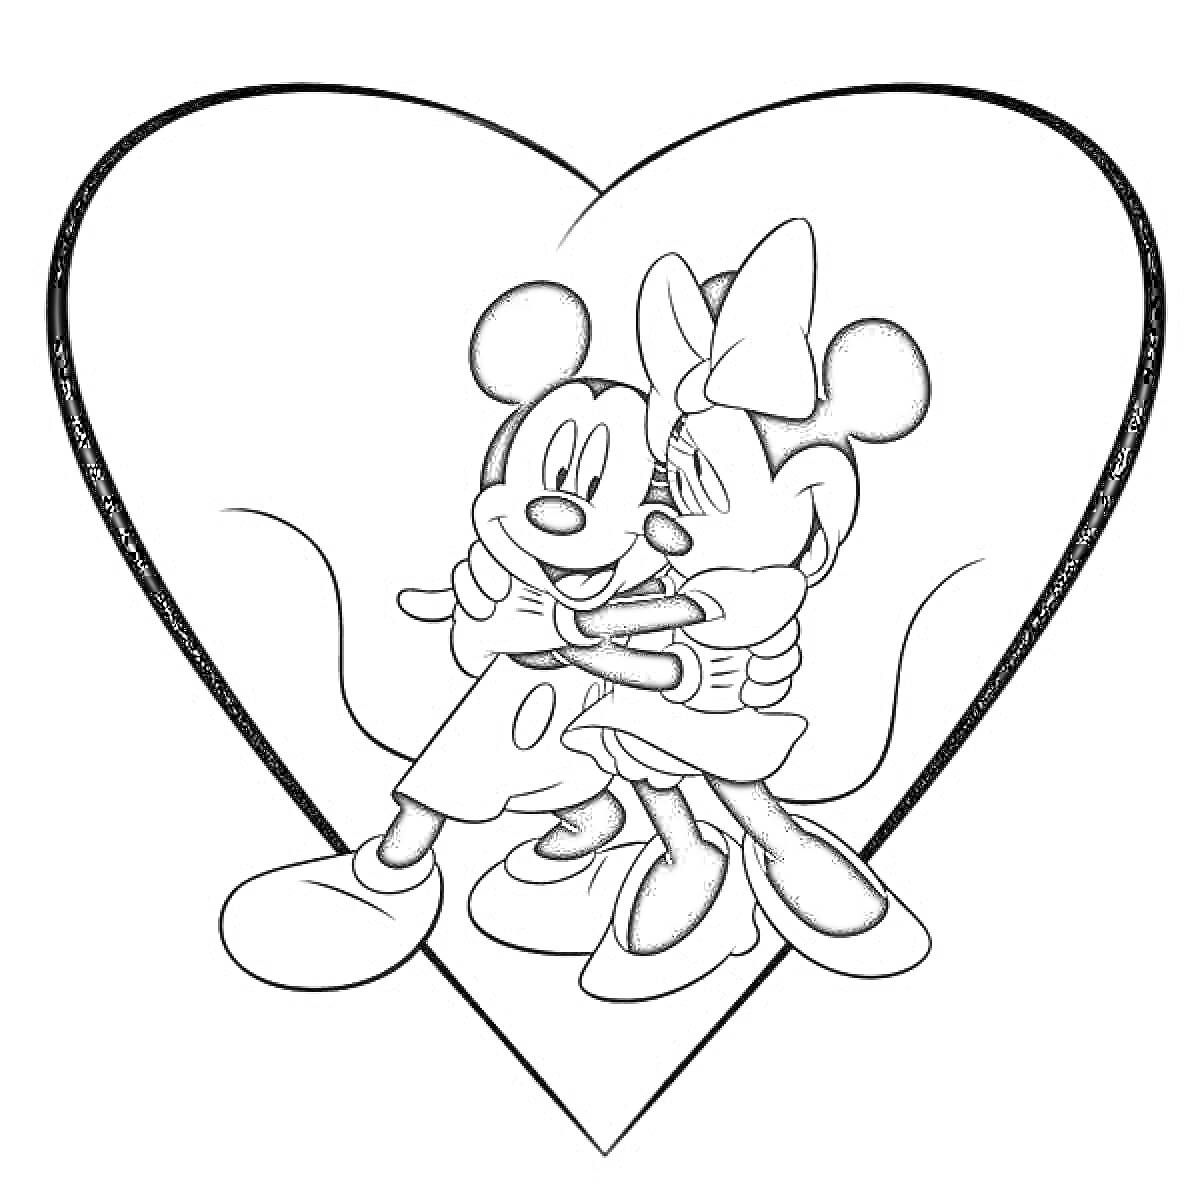 Раскраска Микки Маус и Минни Маус обнимаются на фоне сердца